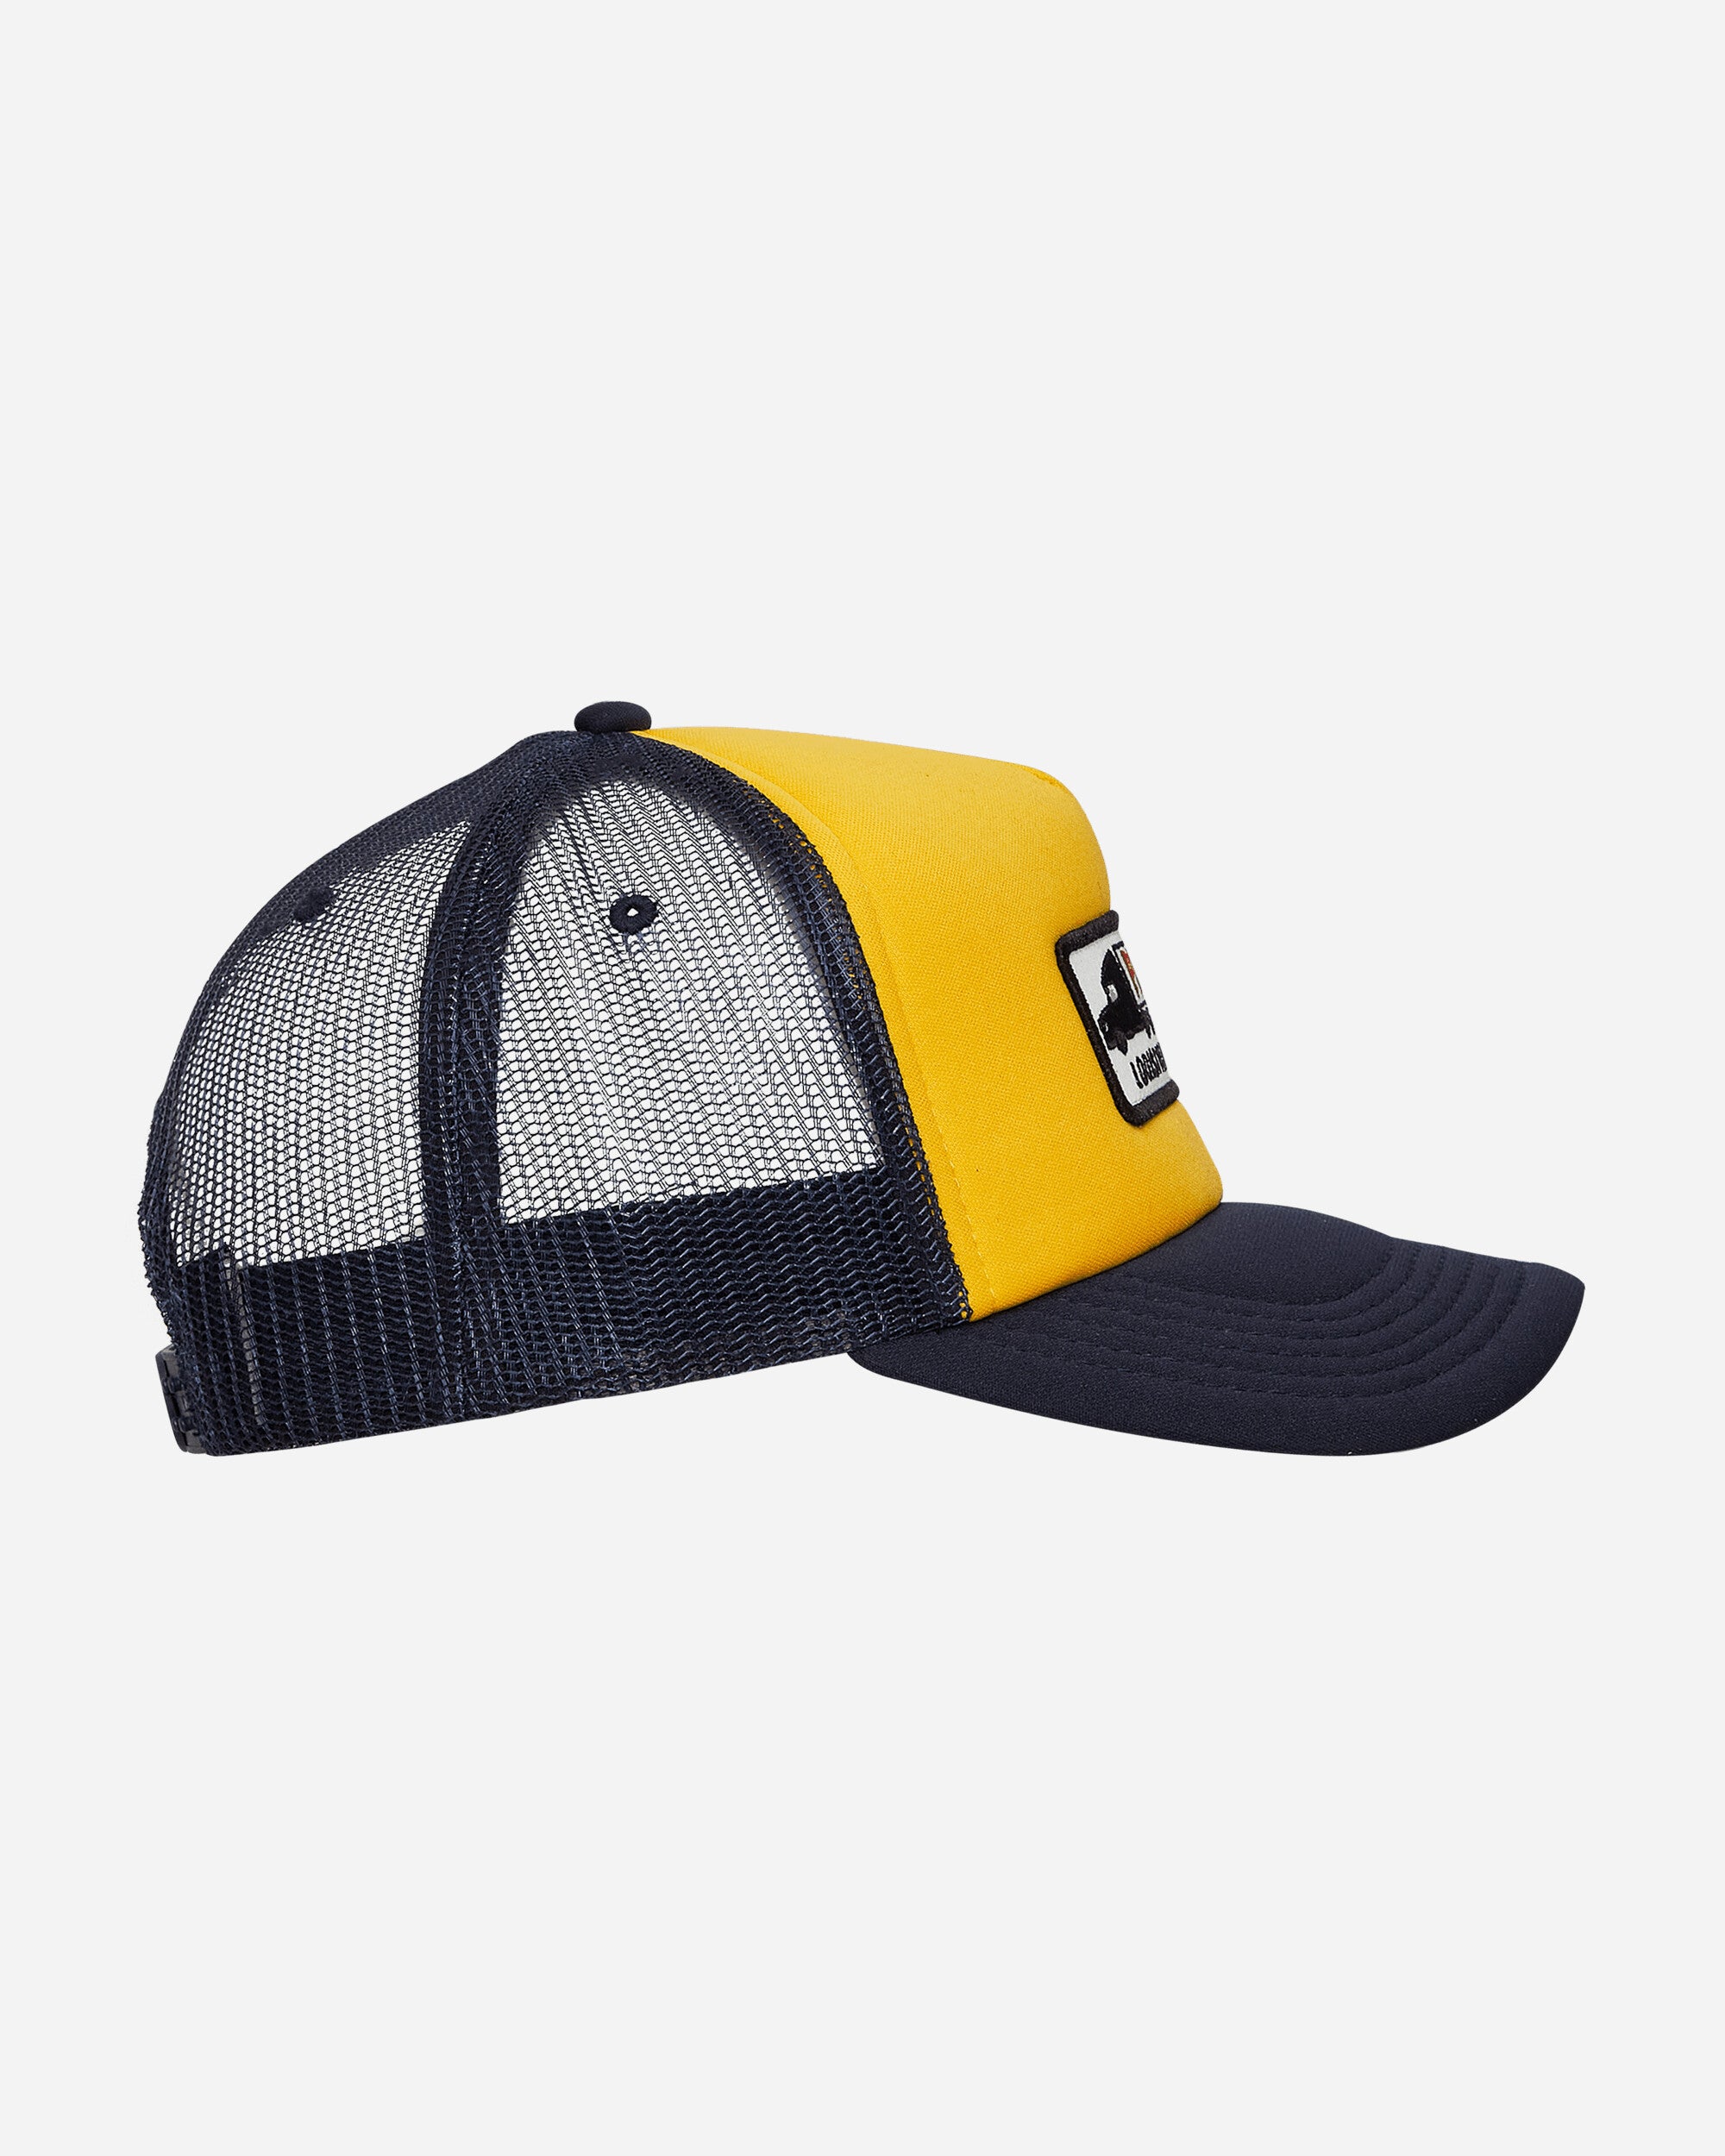 Pleasures Nightmare Trucker Navy/Yellow Hats Caps 9508022 NAVY-YELLOW